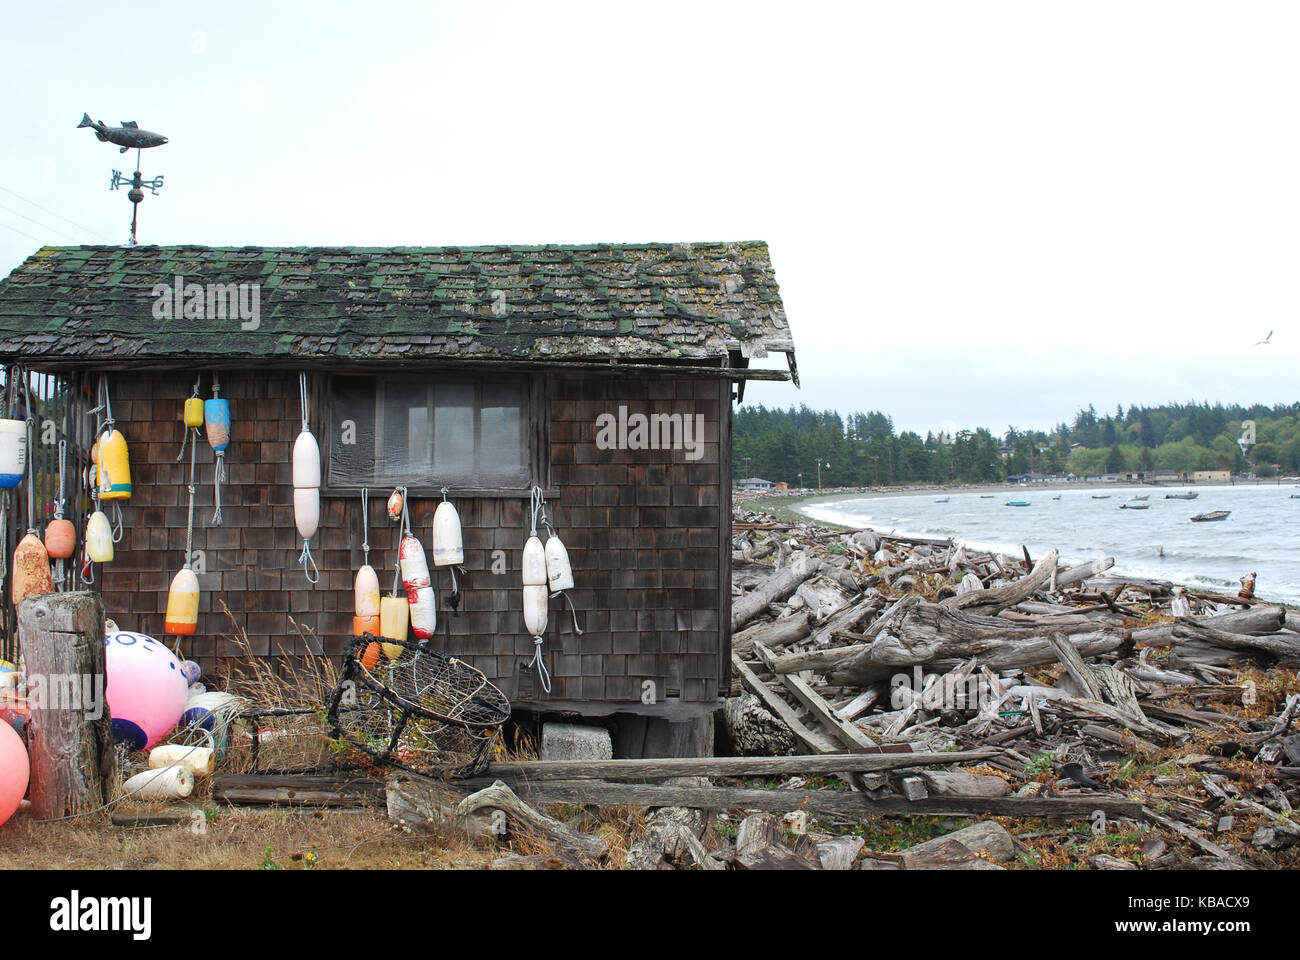 La boa è appeso su una rustica capanna sulla spiaggia su Lummi Island, Washington, Stati Uniti d'America Foto Stock